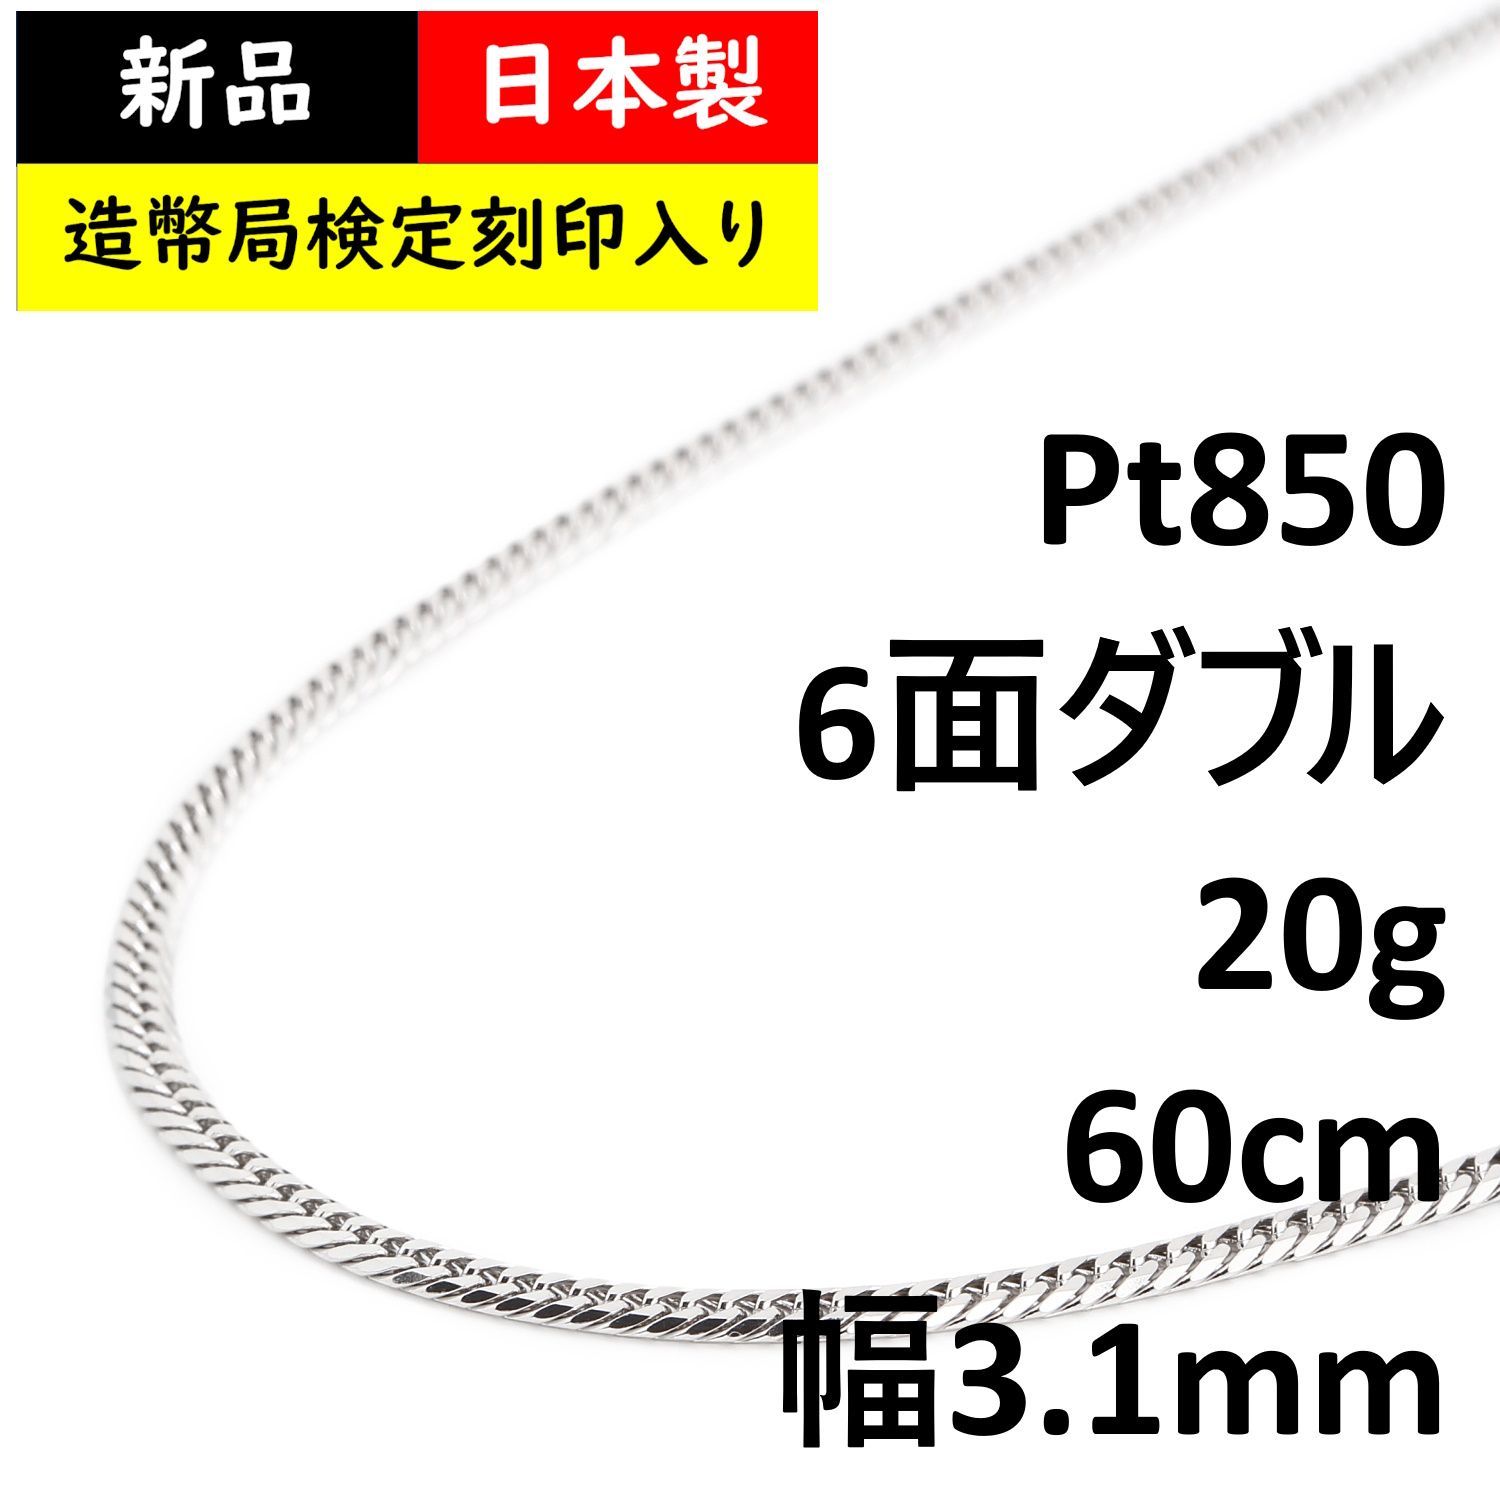 新品未使用 pt850プラチナ 喜平ネックレス 10g 60cm 6面ダブル - ネックレス